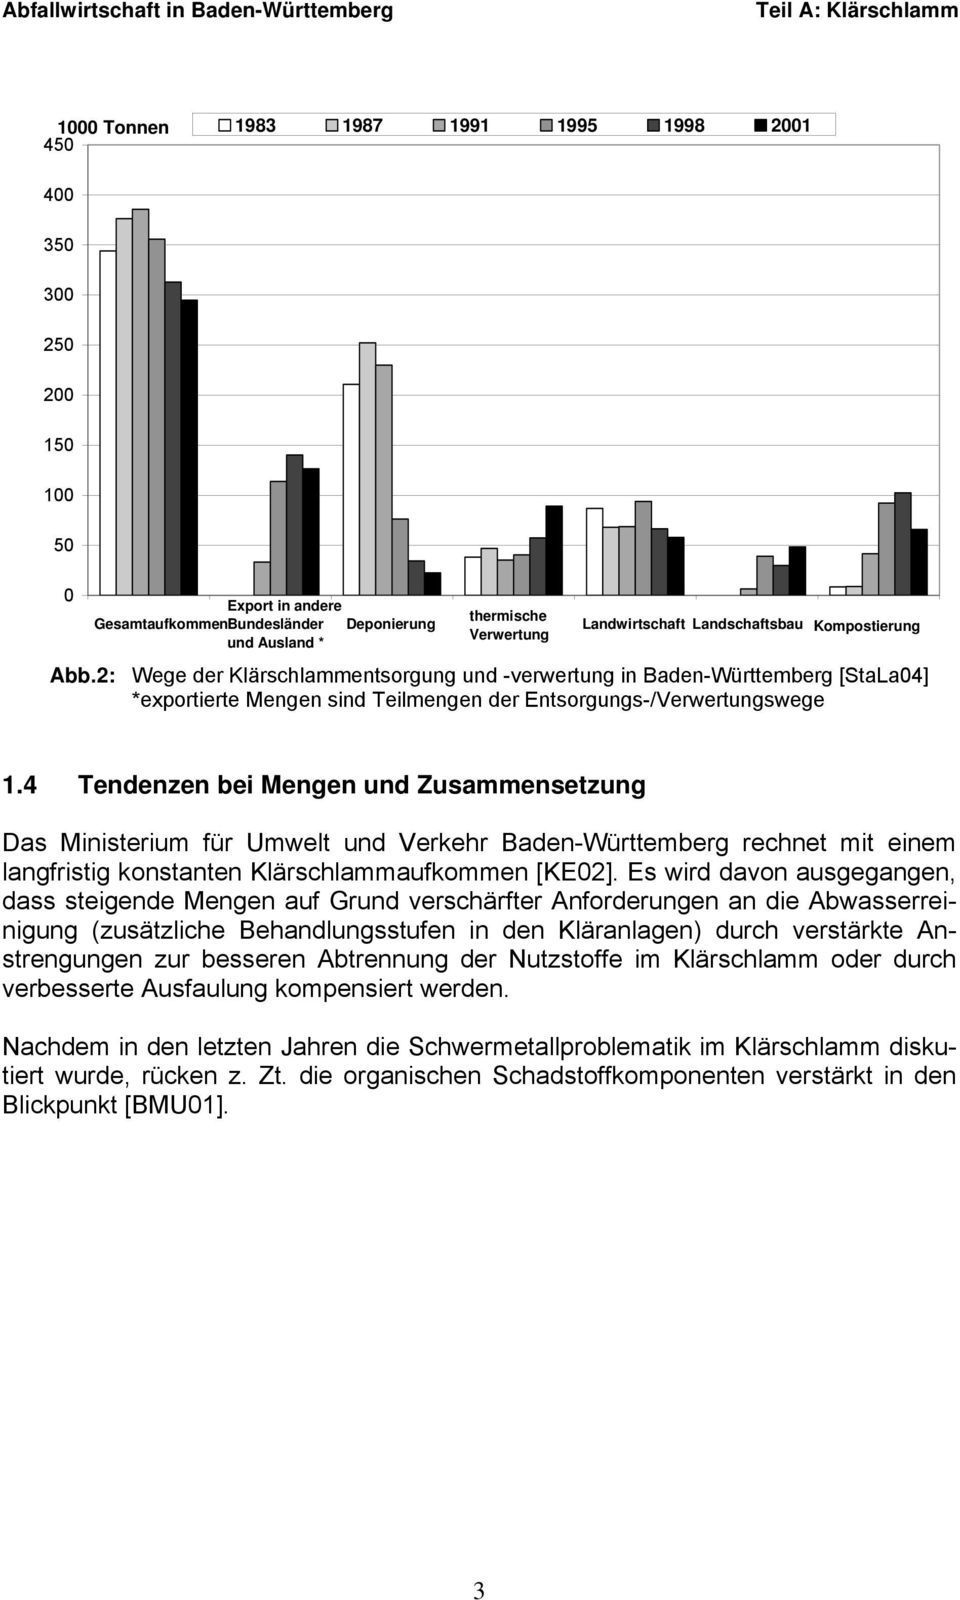 4 Tendenzen bei Mengen und Zusammensetzung Das Ministerium für Umwelt und Verkehr Baden-Württemberg rechnet mit einem langfristig konstanten Klärschlammaufkommen [KE02].